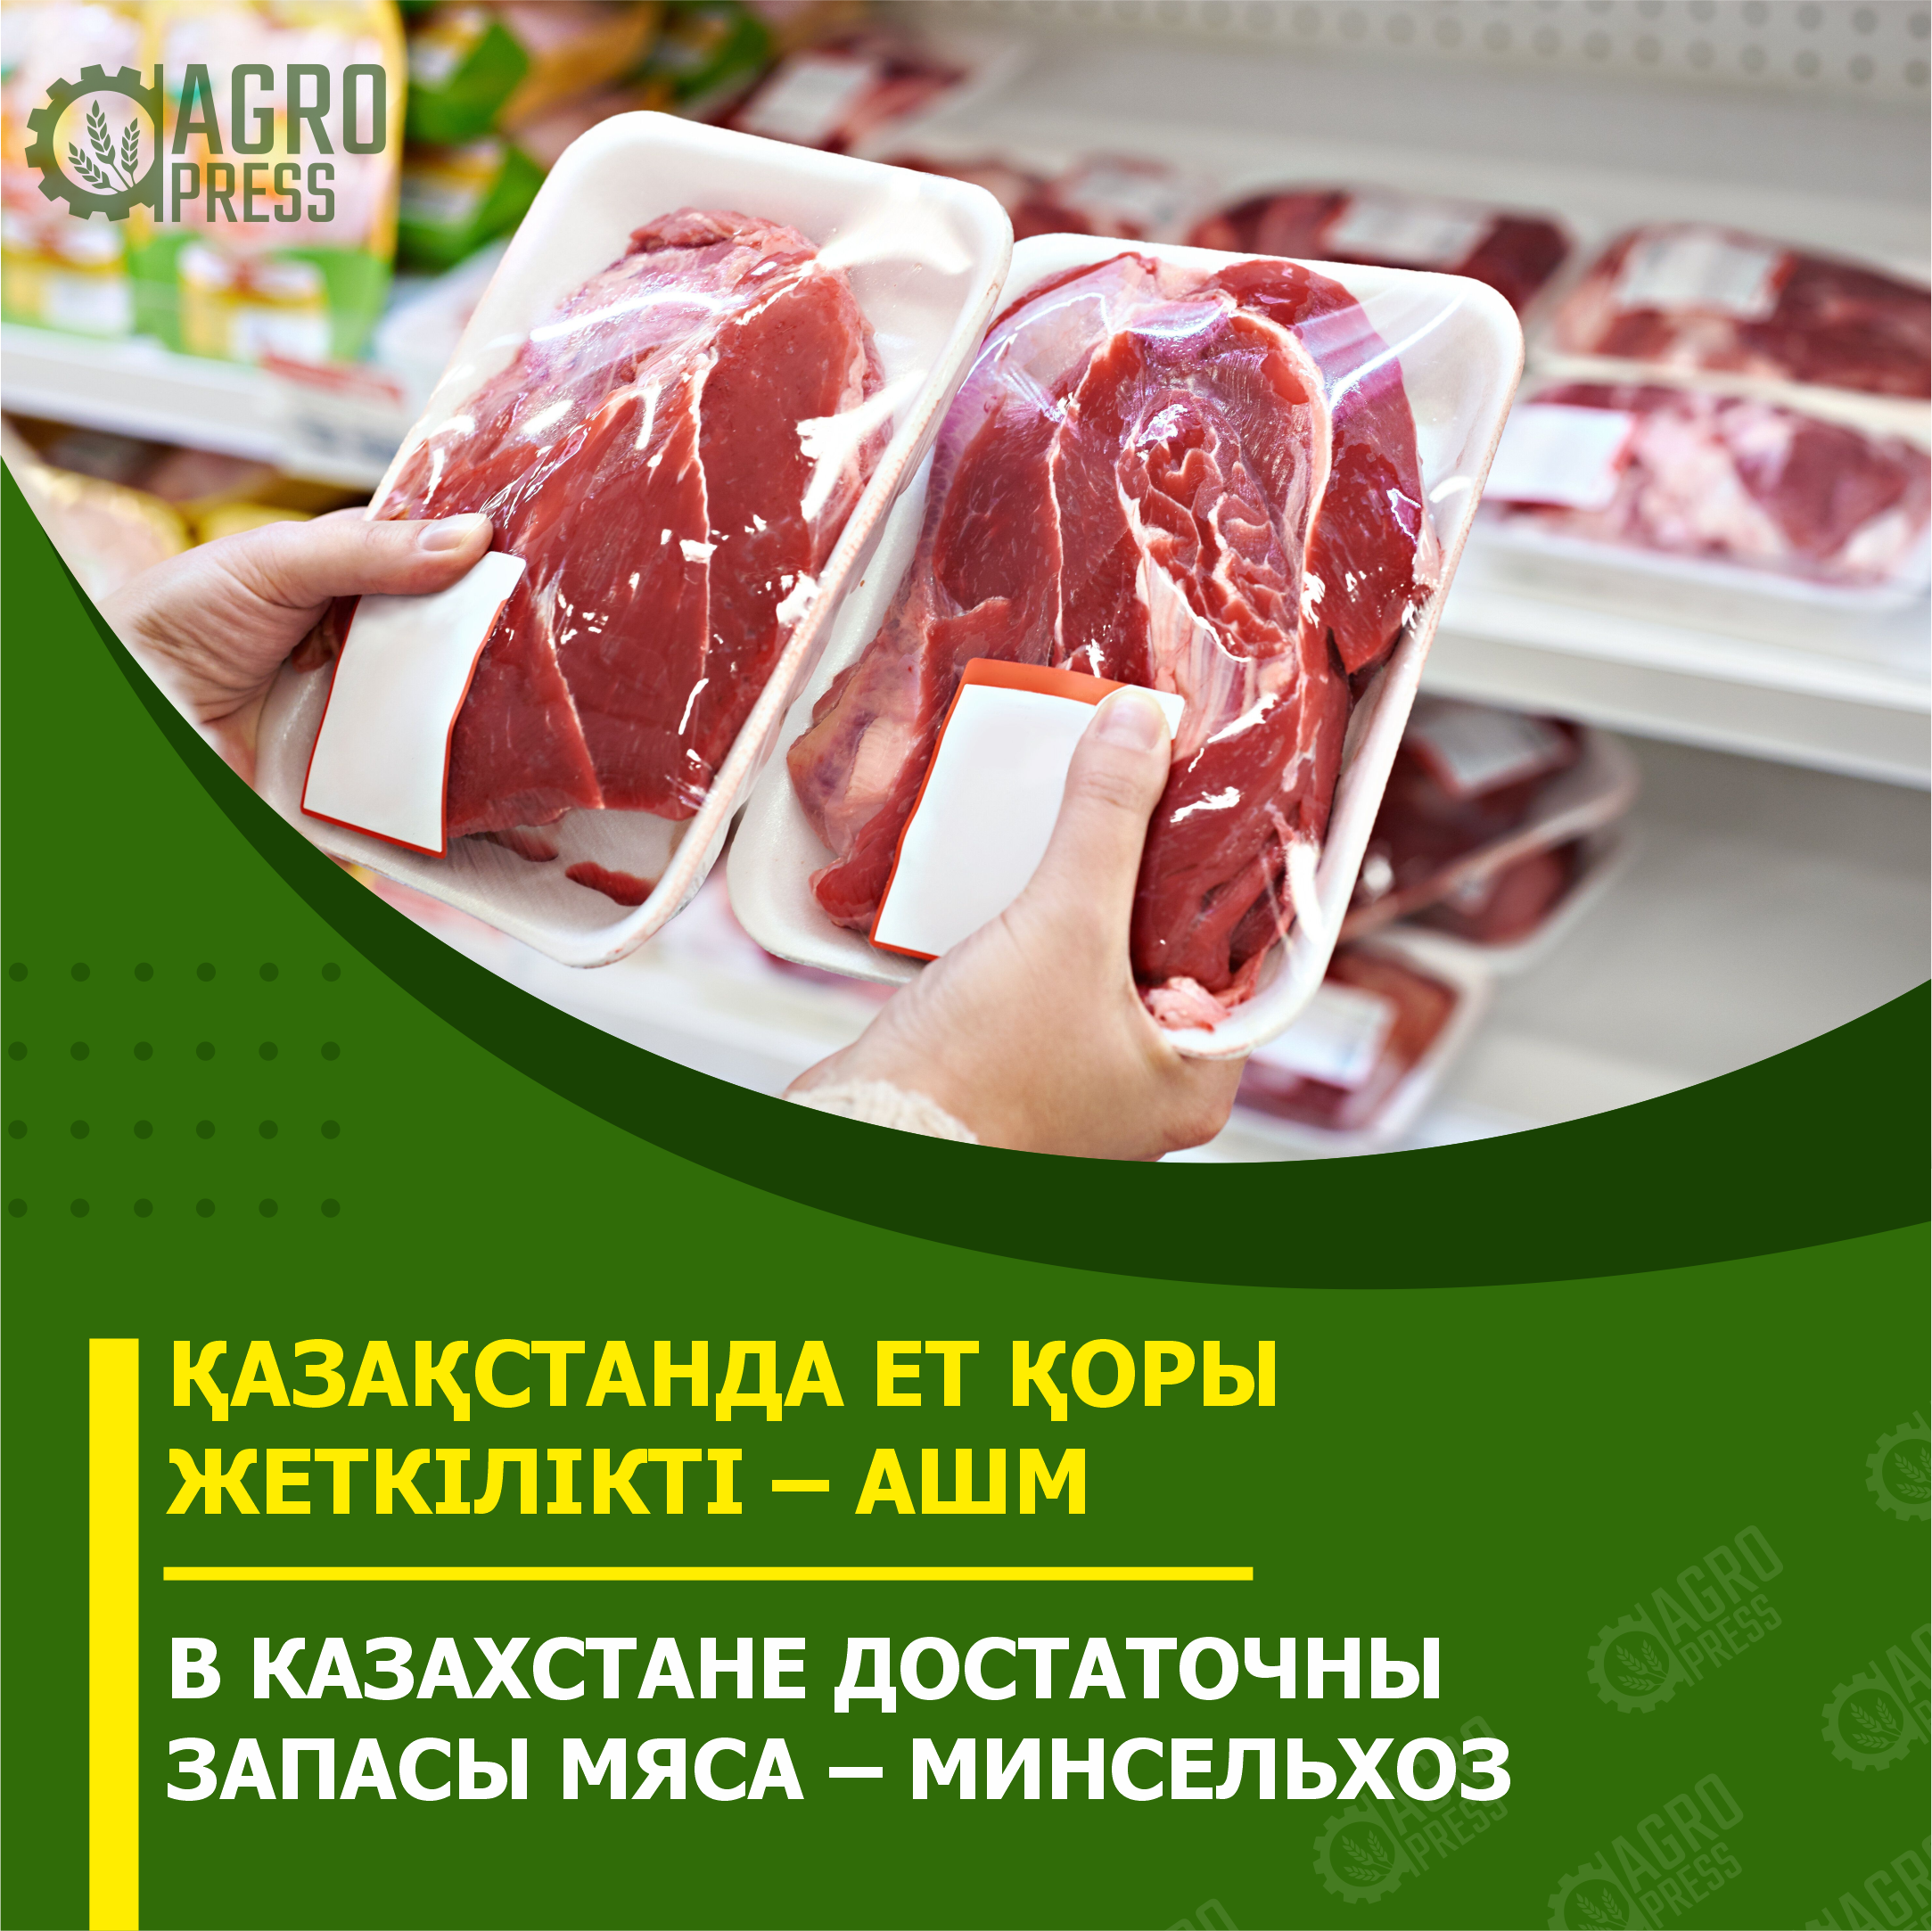 В Казахстане достаточны запасы мяса – Минсельхоз